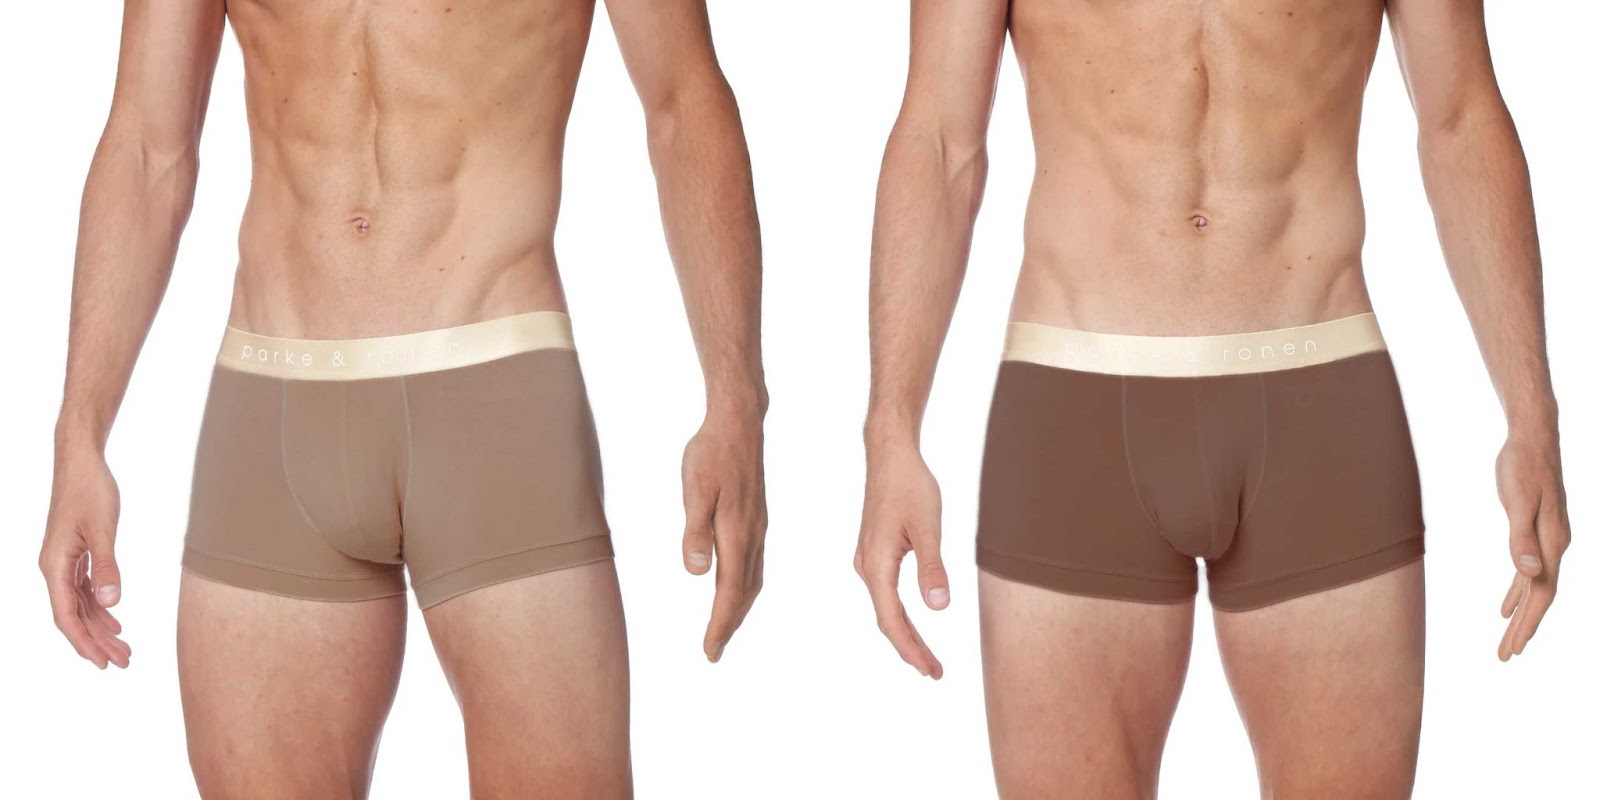 7 Best Men's Nude Underwear Brands in 2023